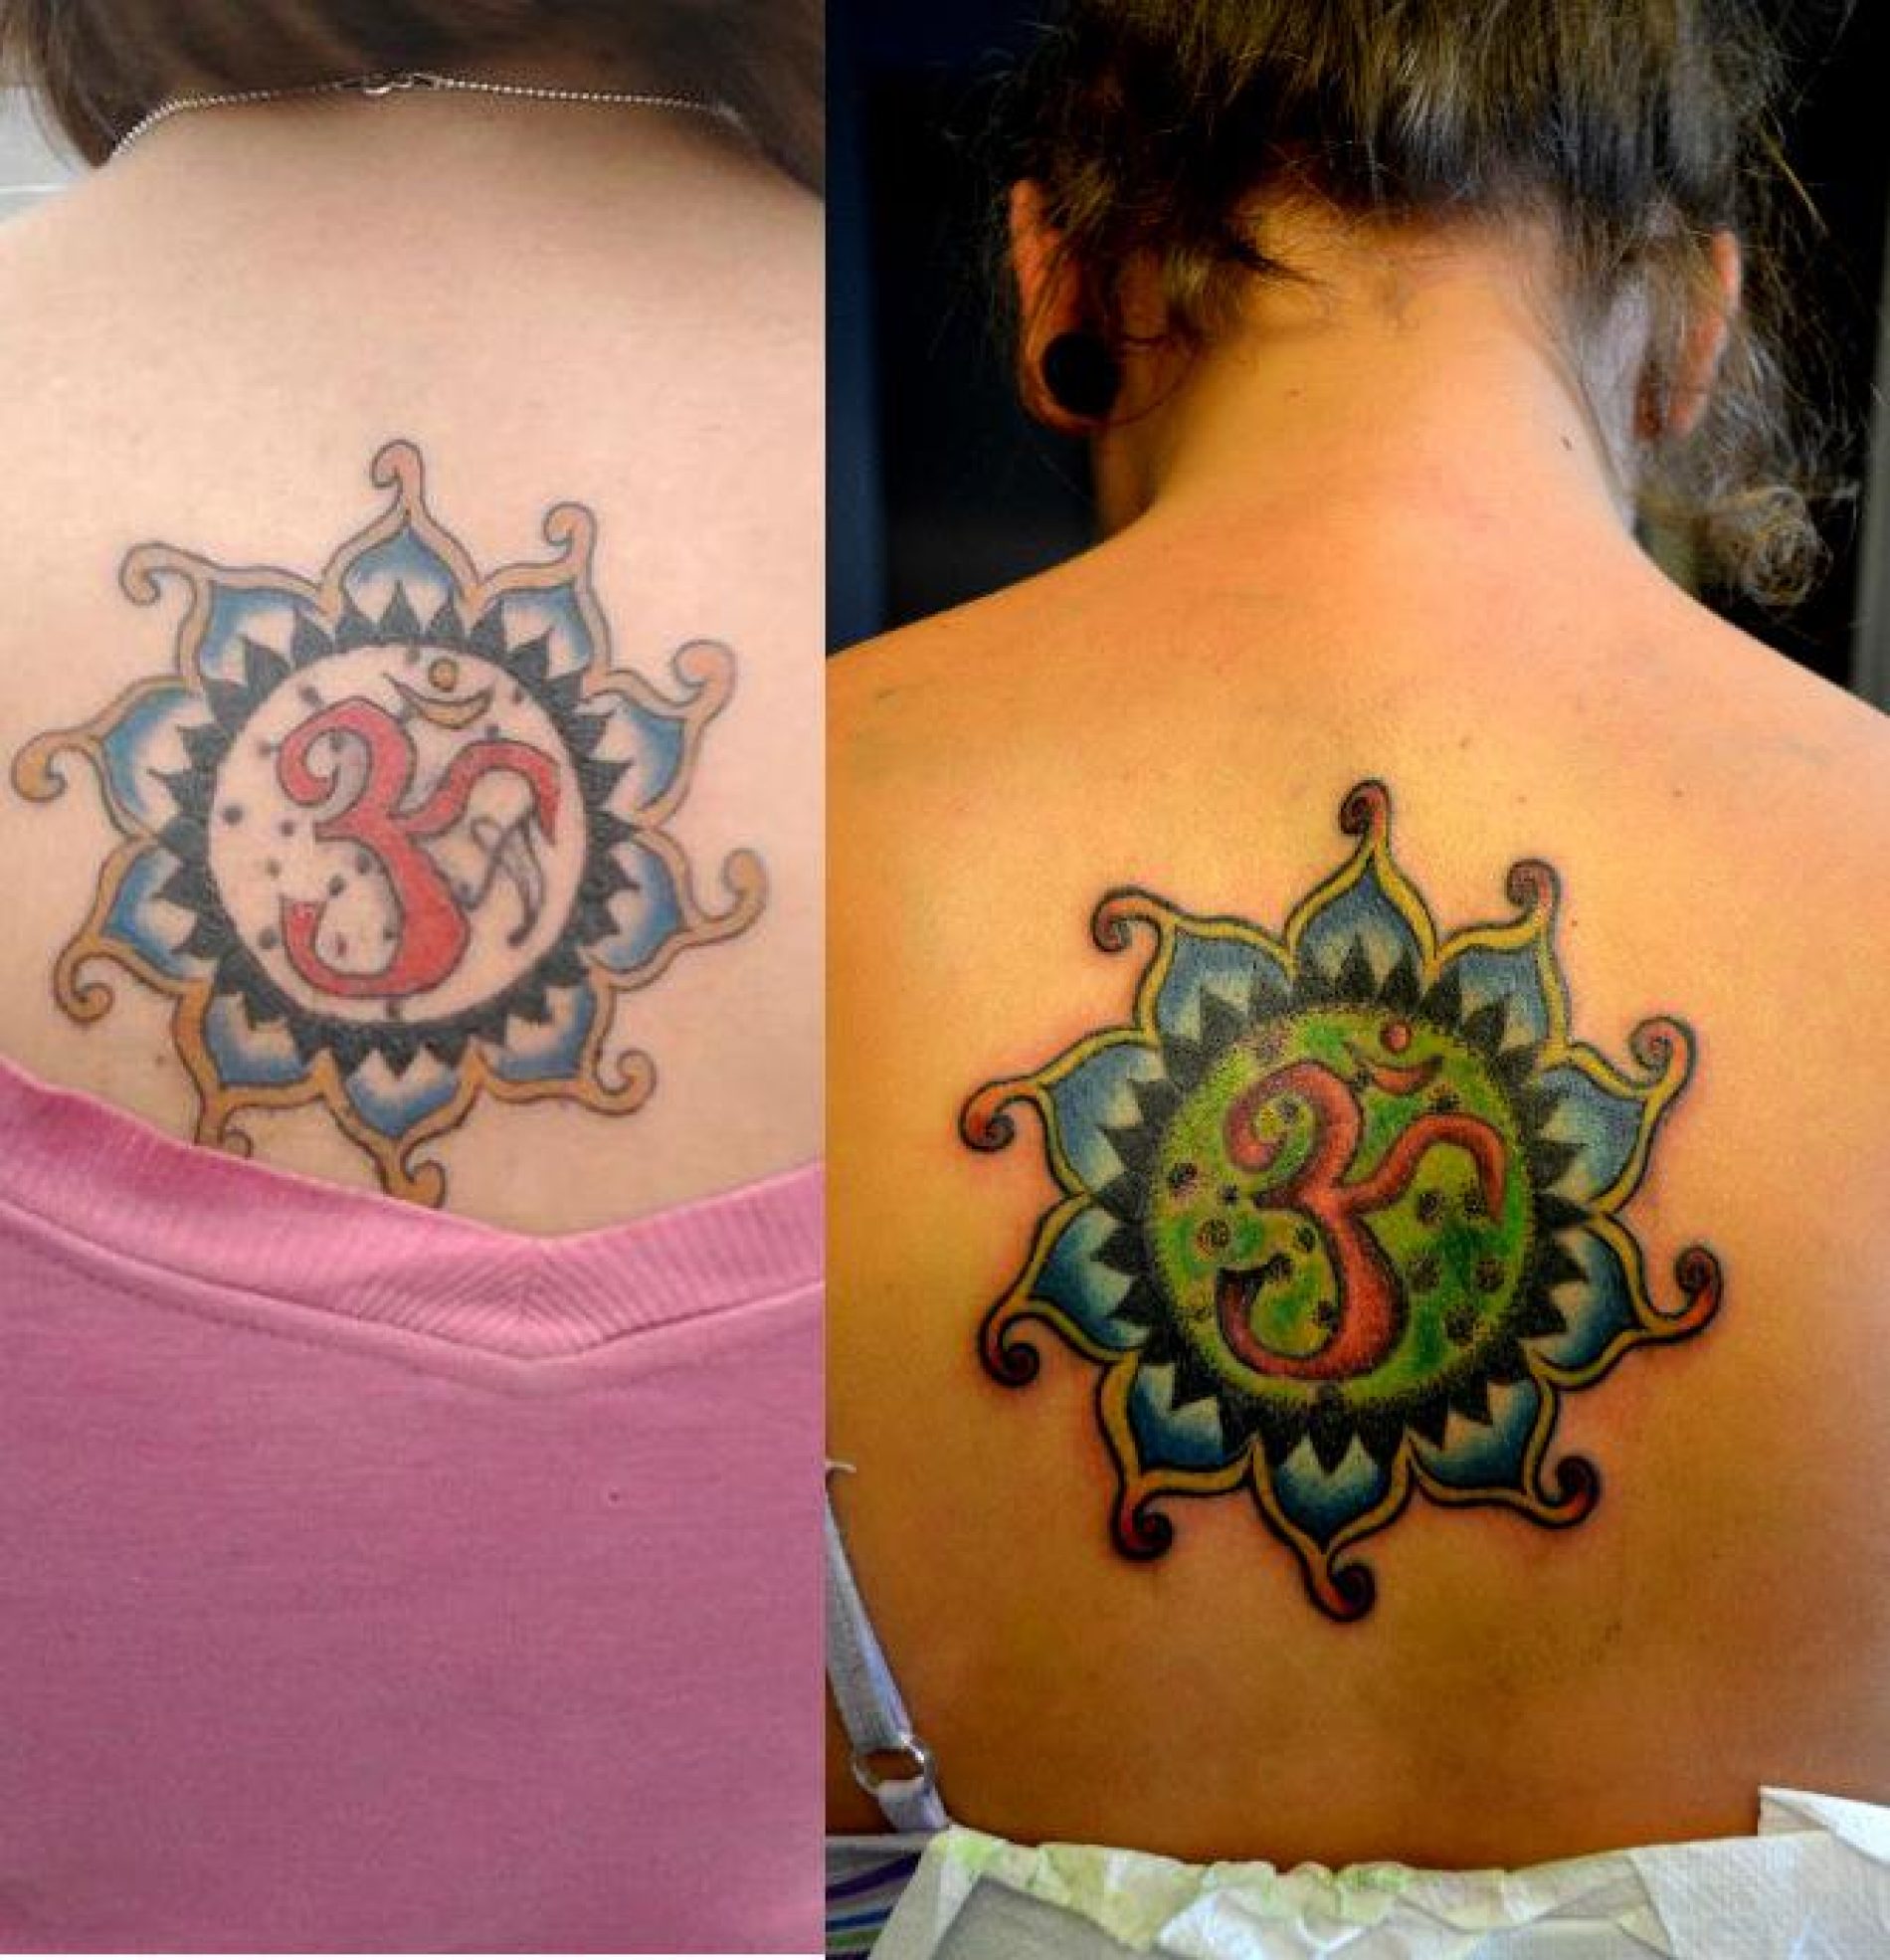 Atelier dedicat celor care vor sa isi aleaga tatuajul perfect